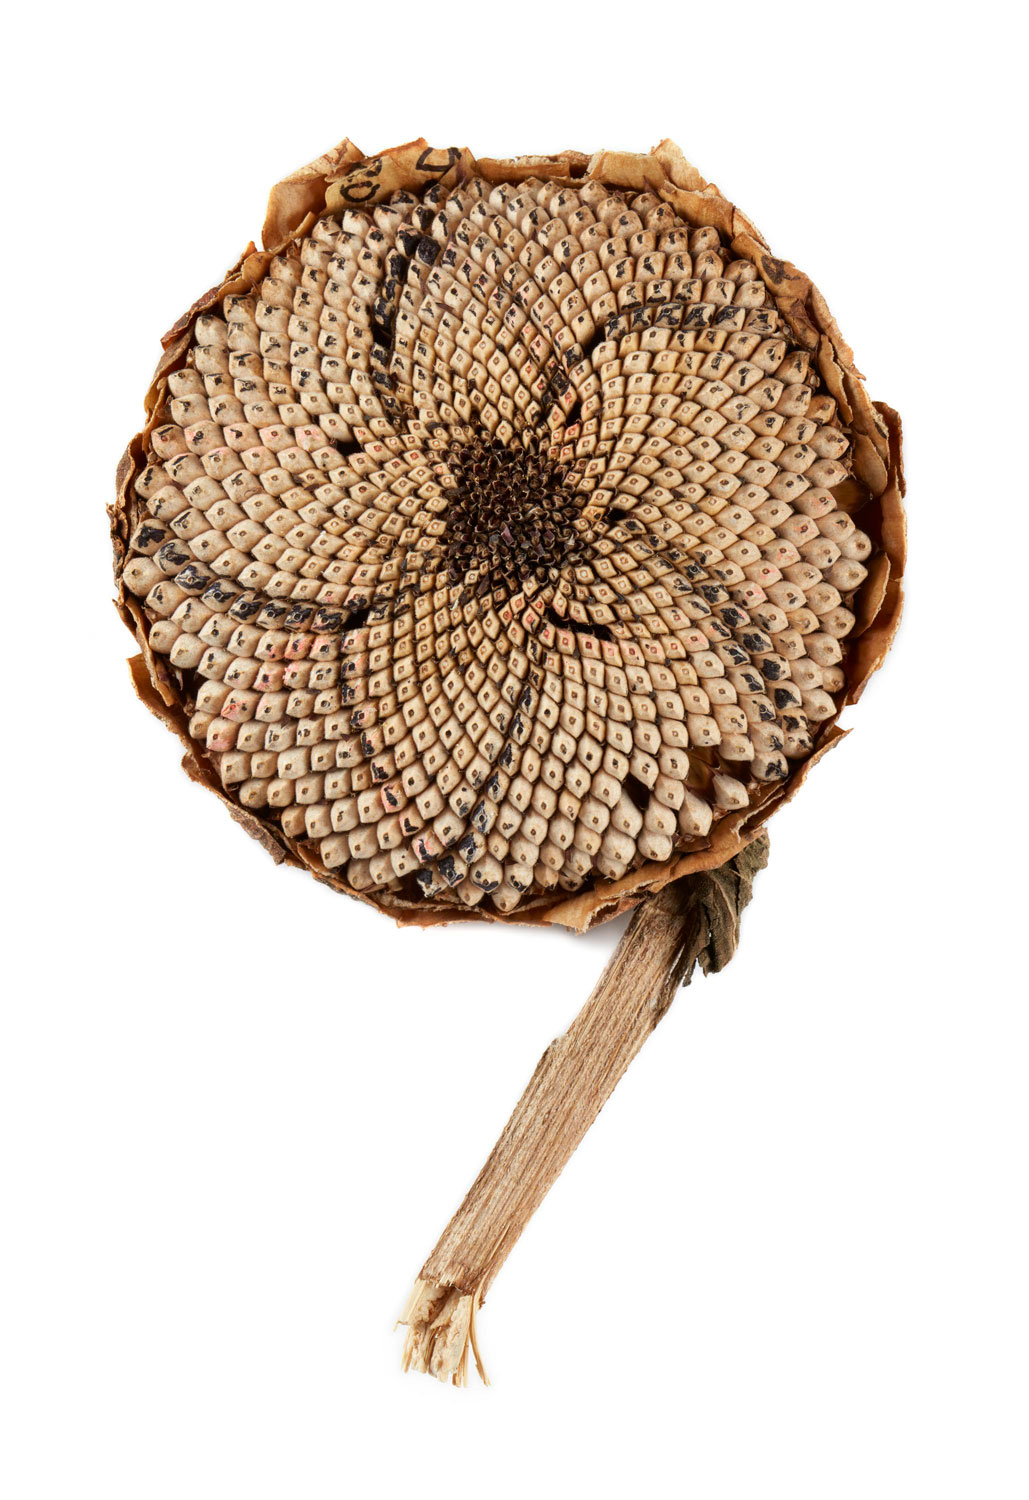 Sunflower seed head